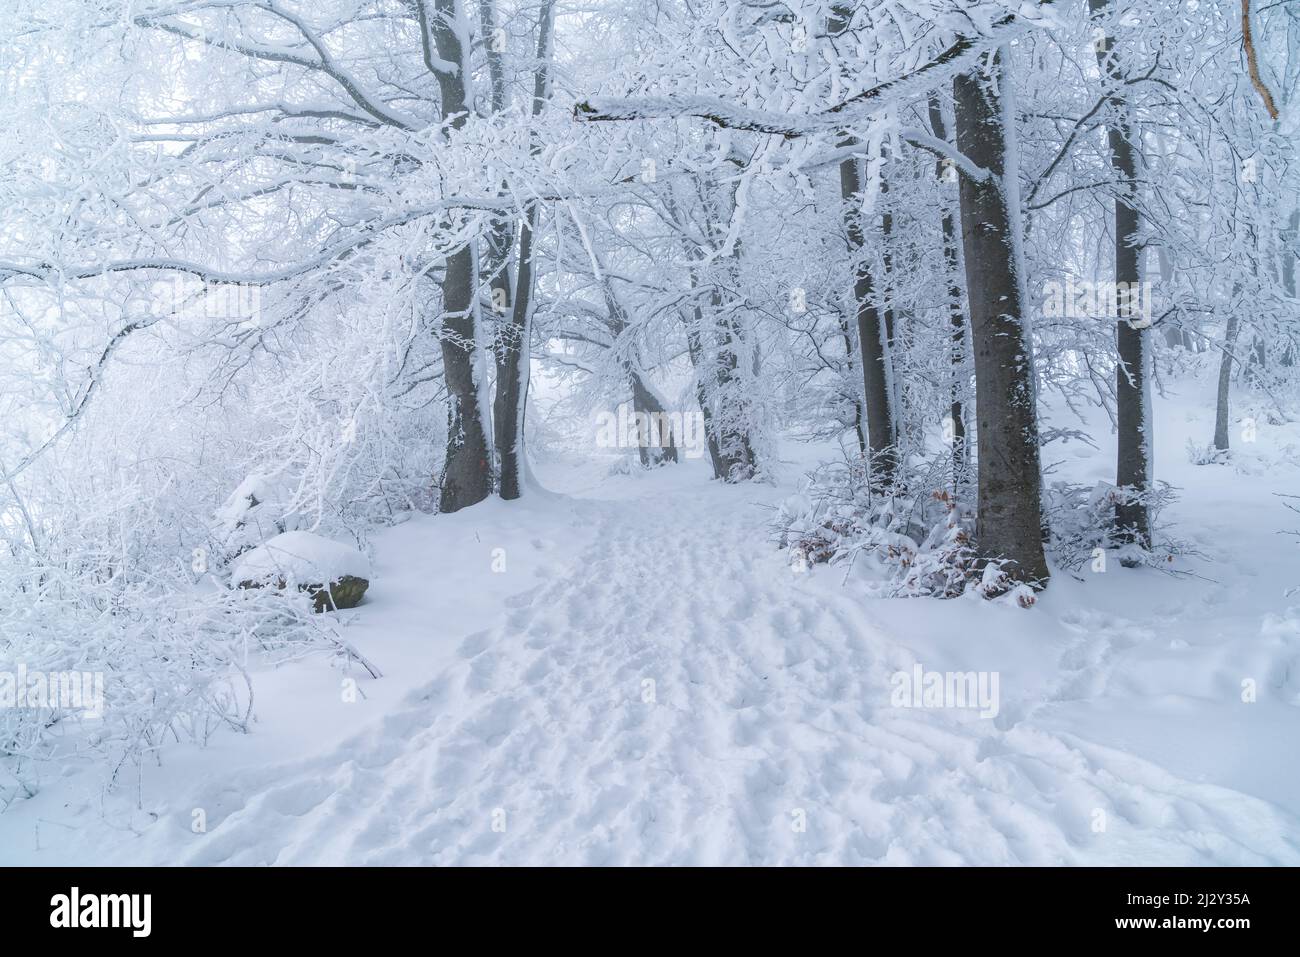 Alemania, invierno en un bosque, árboles cubiertos de nieve blanca y hielo en un frío y helado ambiente de invierno a lo largo de una ruta de senderismo con muchos pasos Foto de stock